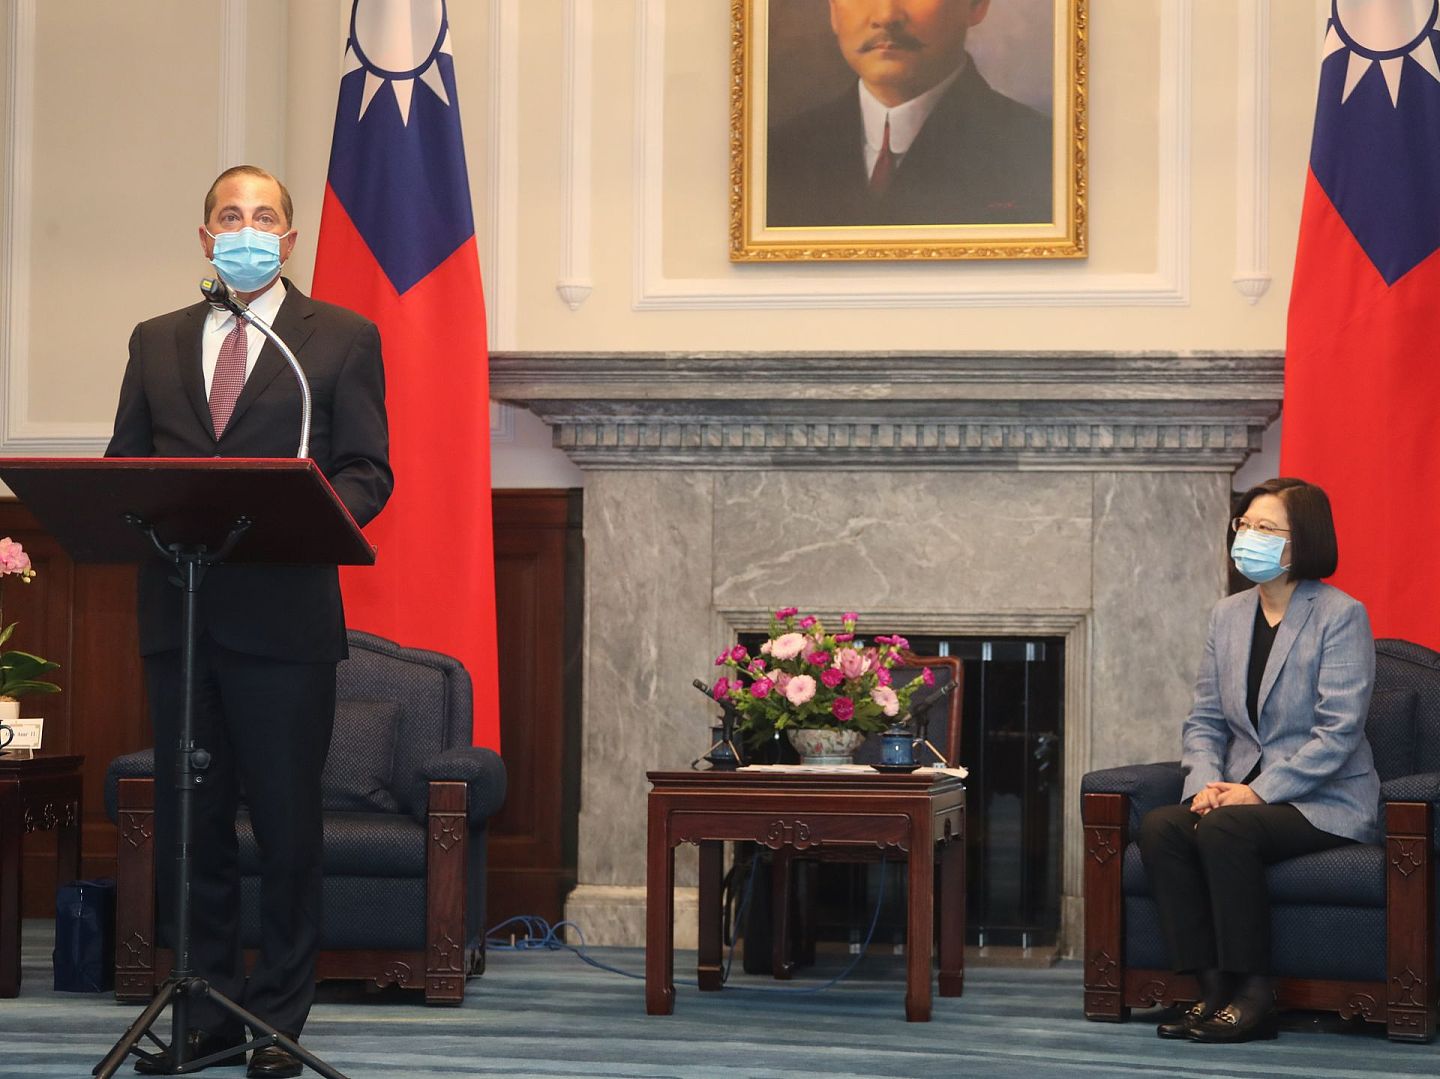 美台关系近来不断升温。美国卫生部长阿扎（Alex Azar）2020年8月份访问了台湾。8月10日，阿扎获得台湾领导人蔡英文接见。（中央社）